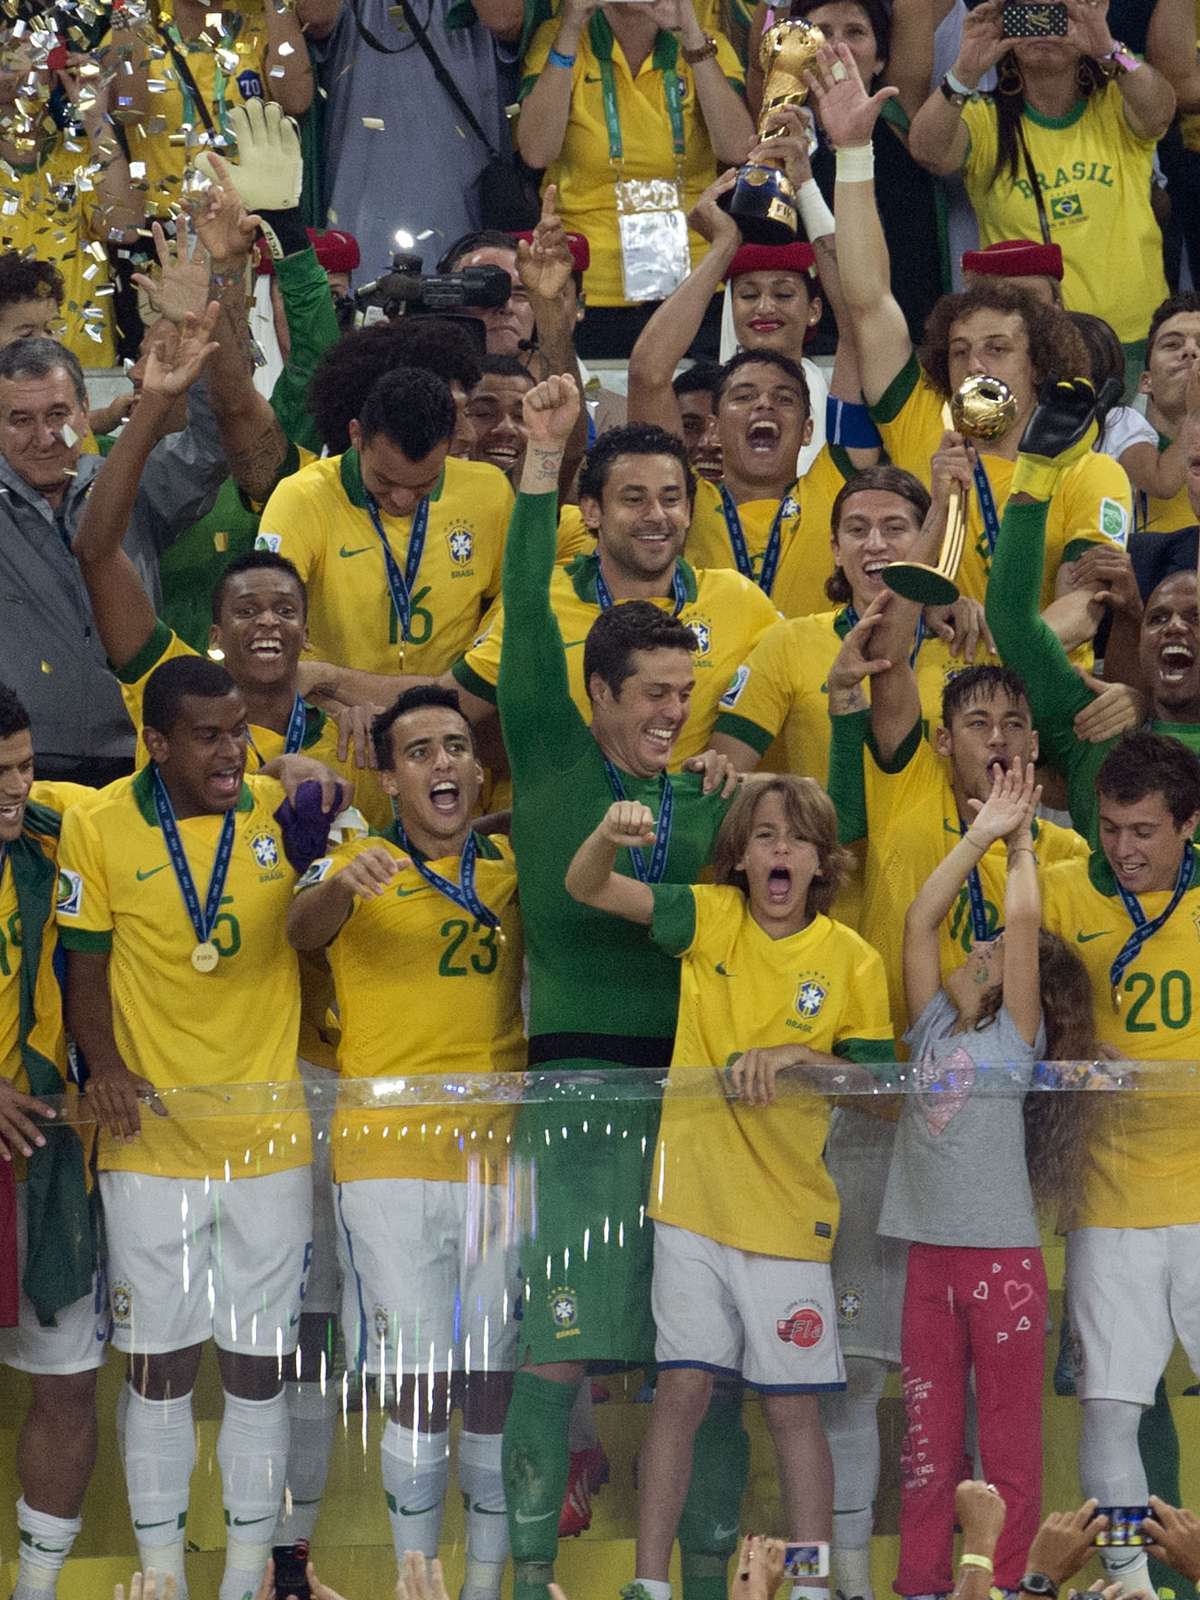 Espanha derrota a Holanda e conquista o 1º mundial - BBC News Brasil